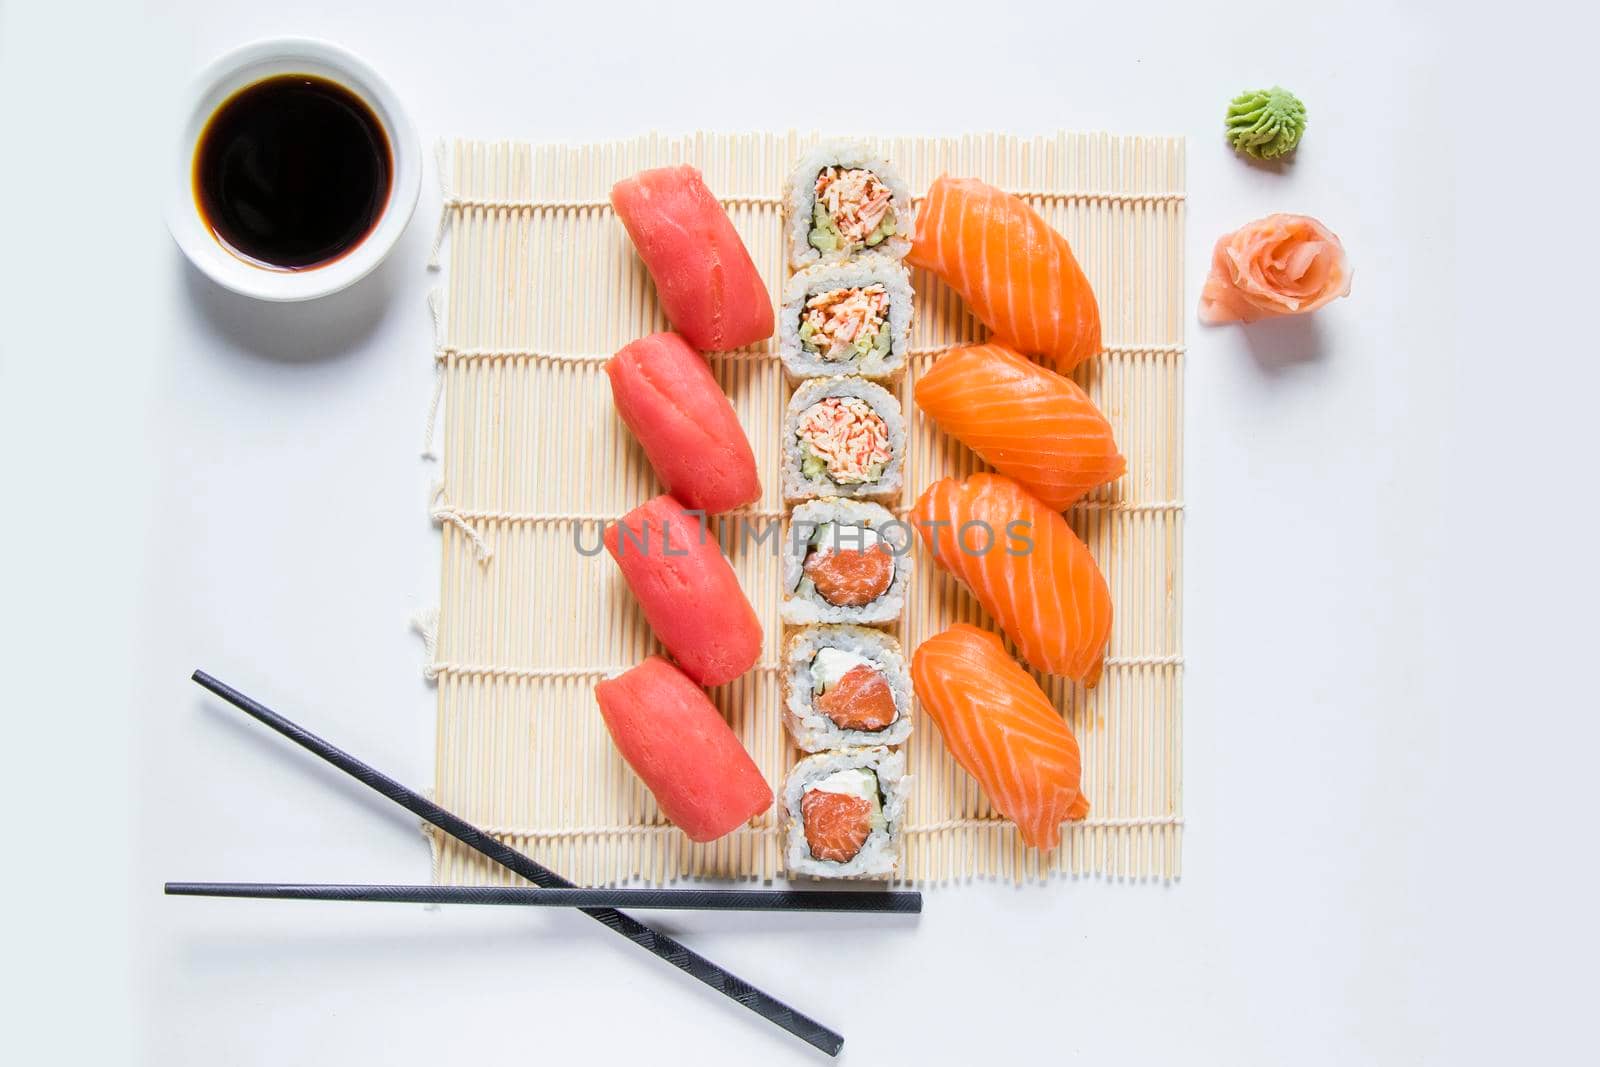 Japanishe food Nigiri sushi set, salmon, tuna and shrimp sushi by Taidundua